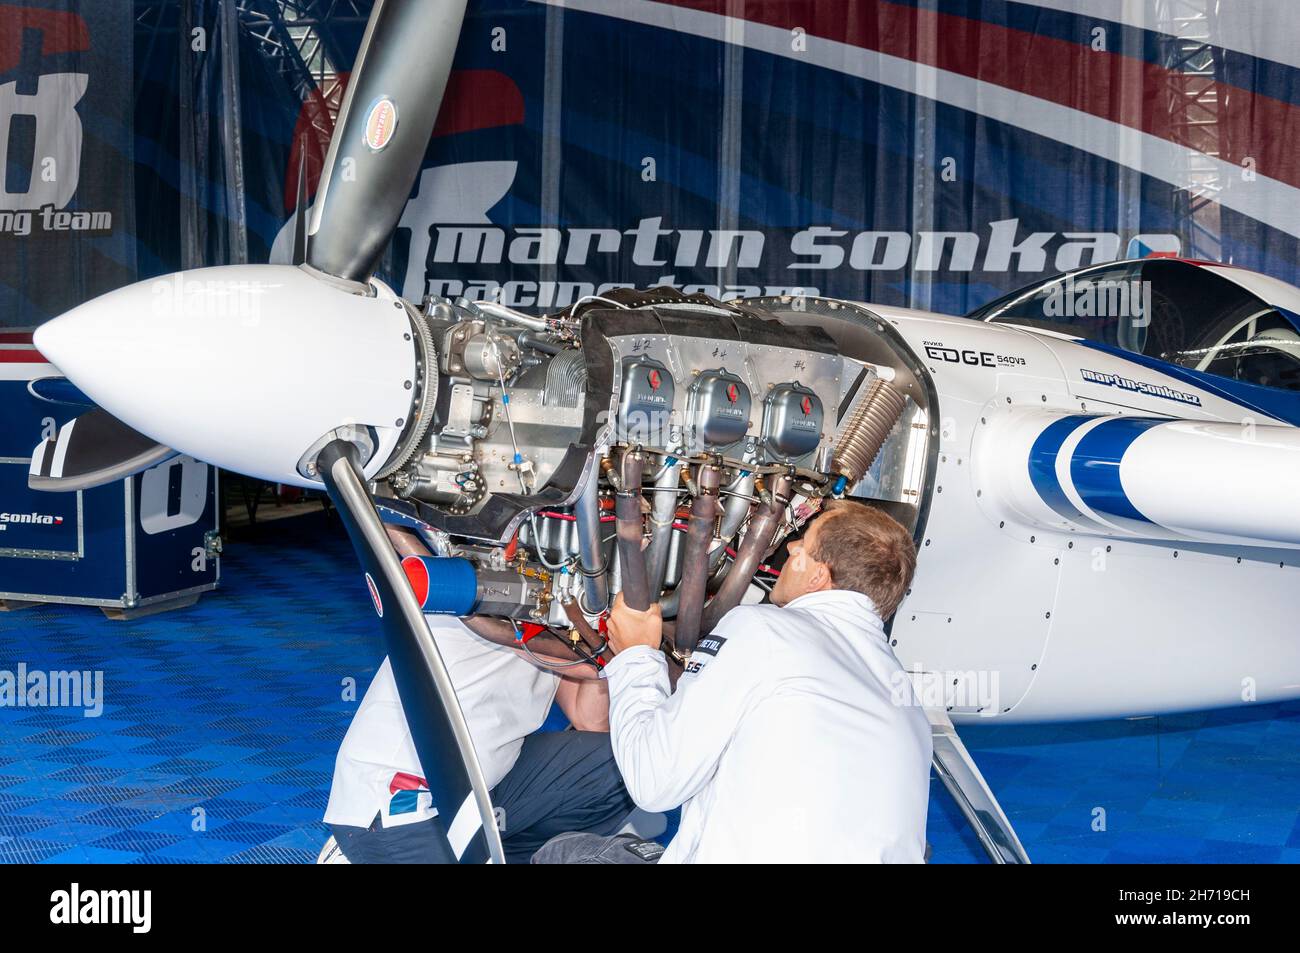 Ingénieurs travaillant sur le moteur Lycoming de l'avion de course Zivco Edge 540 V3 du pilote Martin Sonka à la série Red Bull Air Race à l'hippodrome d'Ascot Banque D'Images